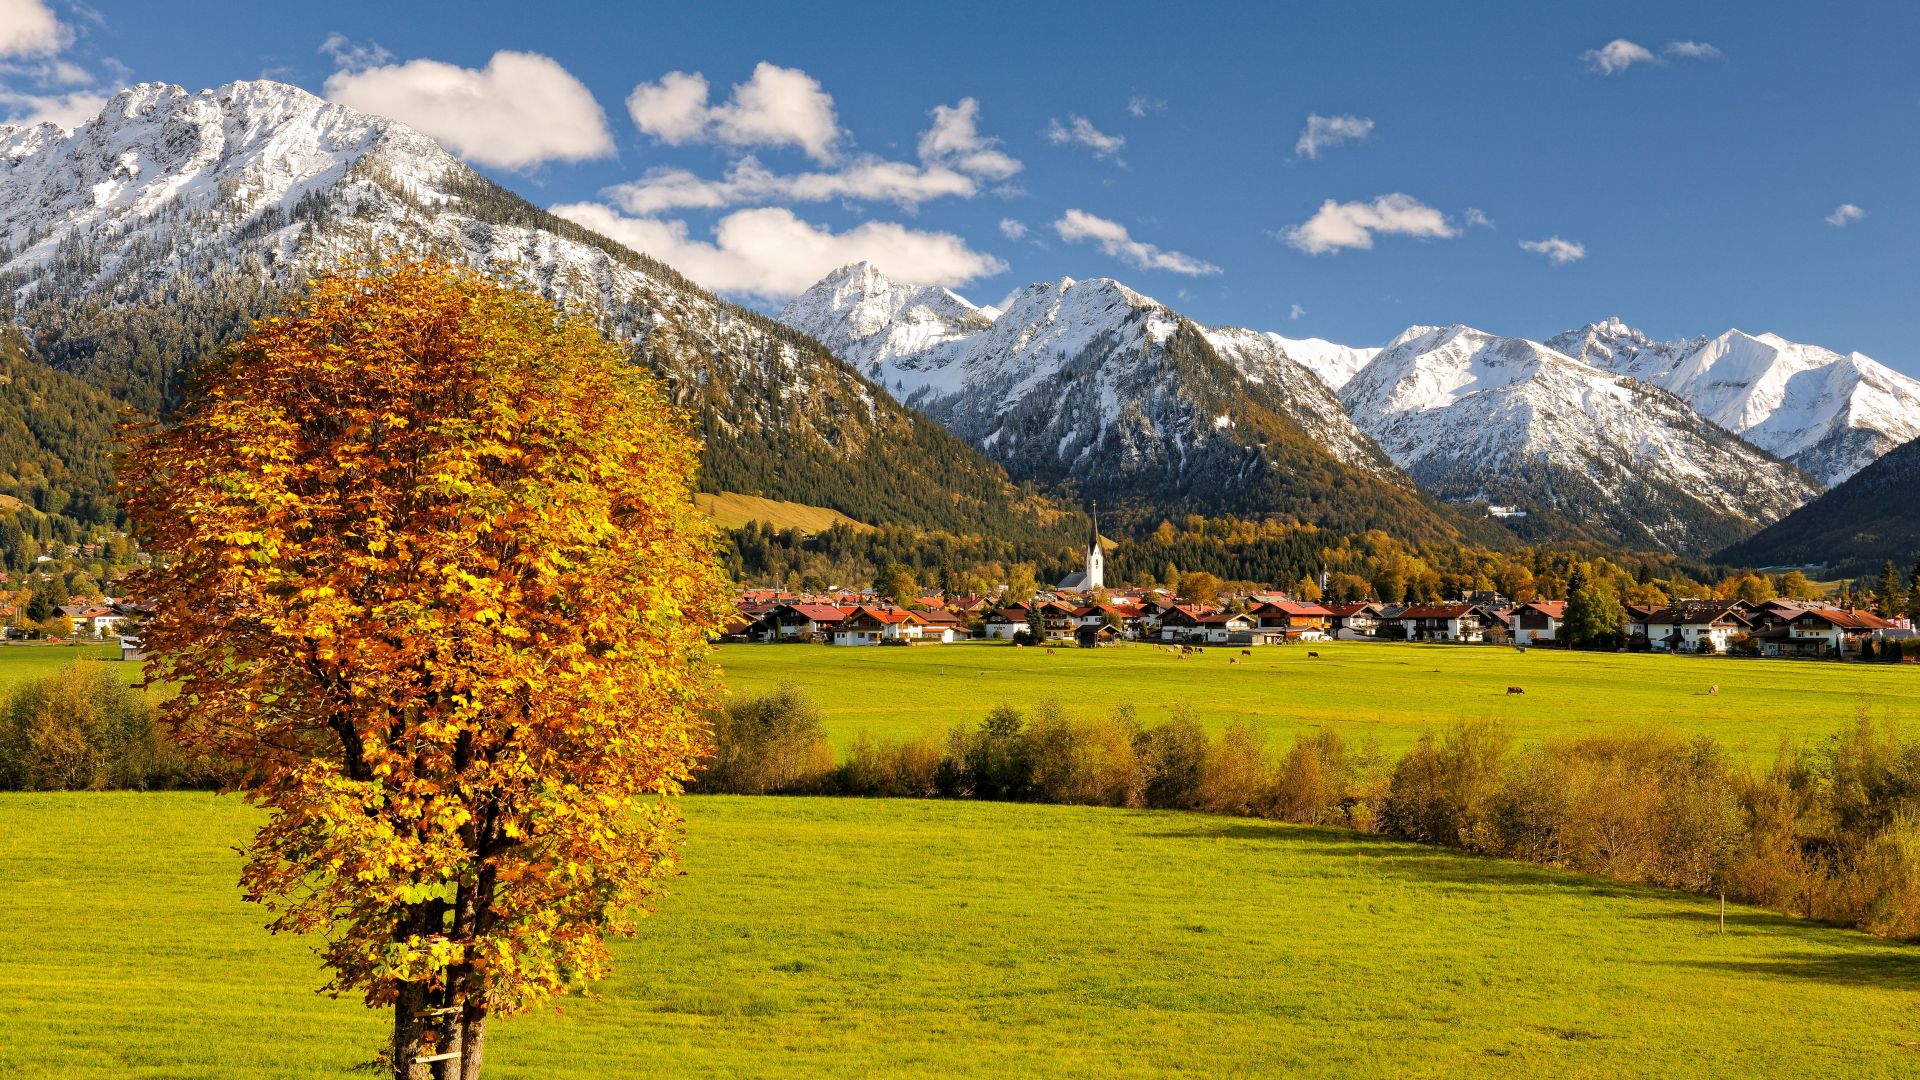 Allgaeu, Germany, Europe, mountains, autumn, tree, 5k (horizontal)